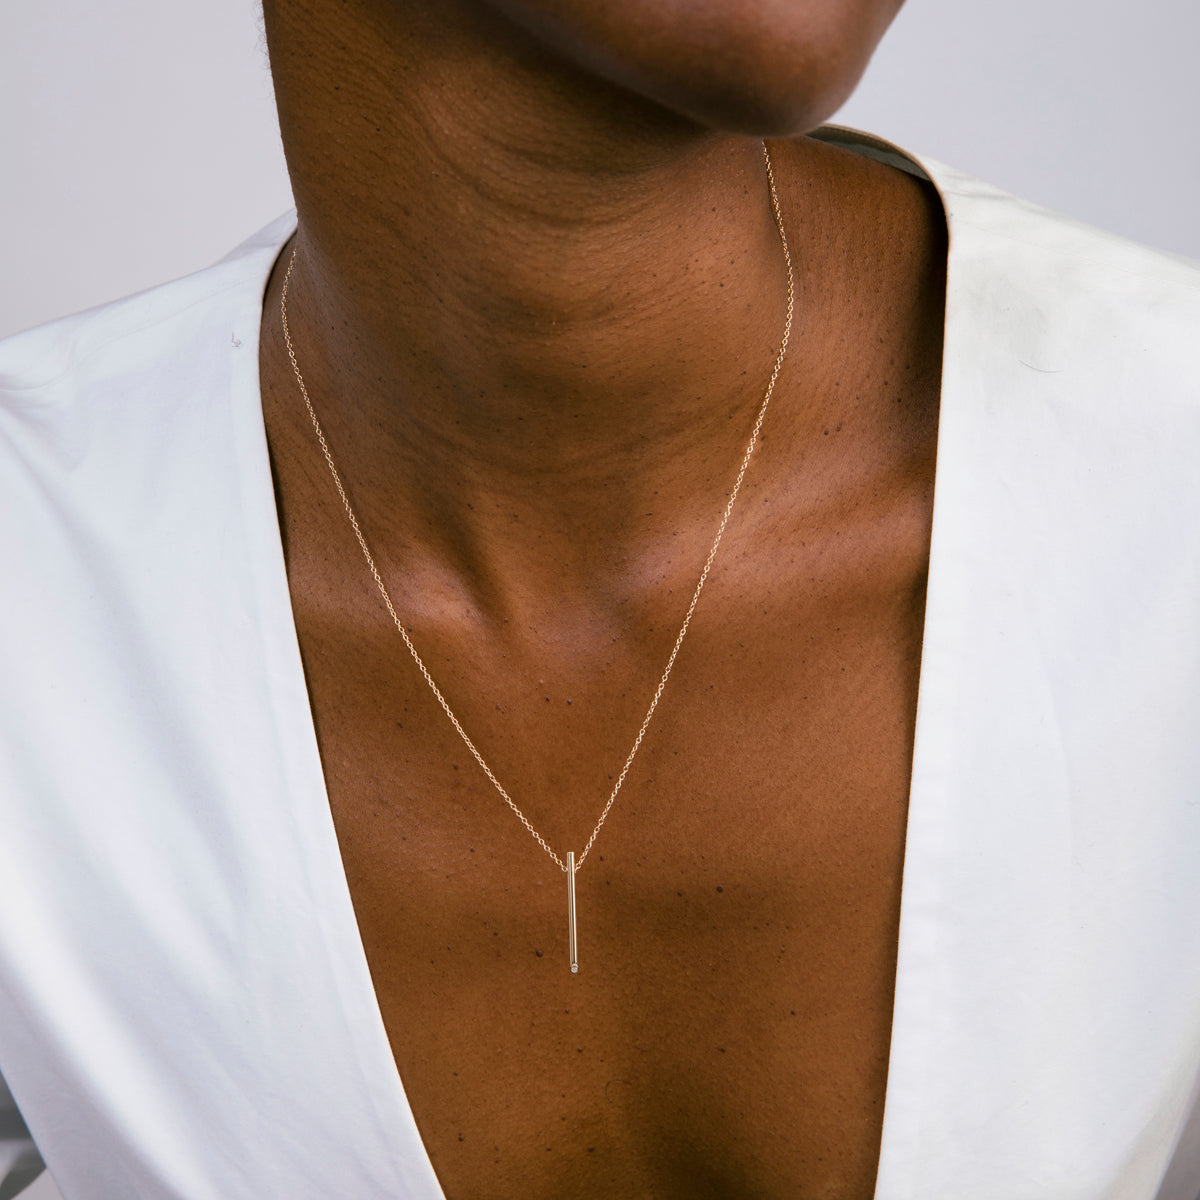 Ossu Minimalist Necklace in 14k Gold set with White Diamonds By SHW Fine Jewelry NYC